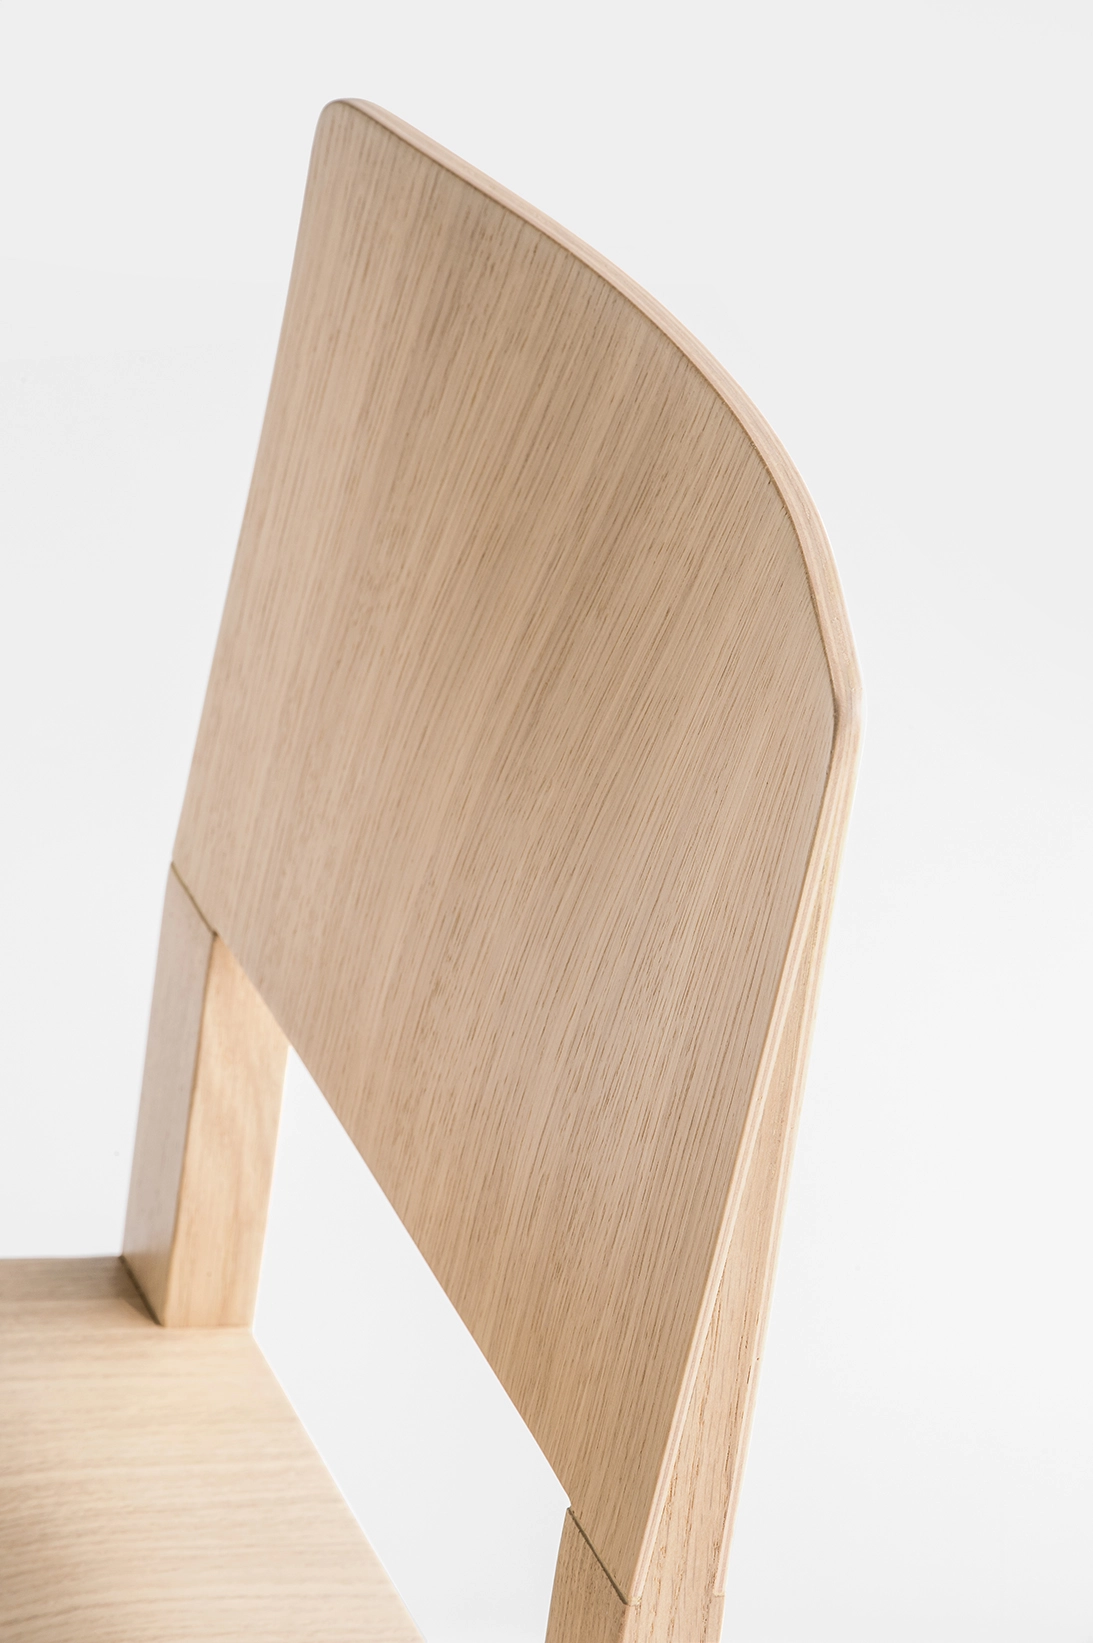 Stuhl BRERA 380 - Holz von Pedrali GC - hellgrau lackiert